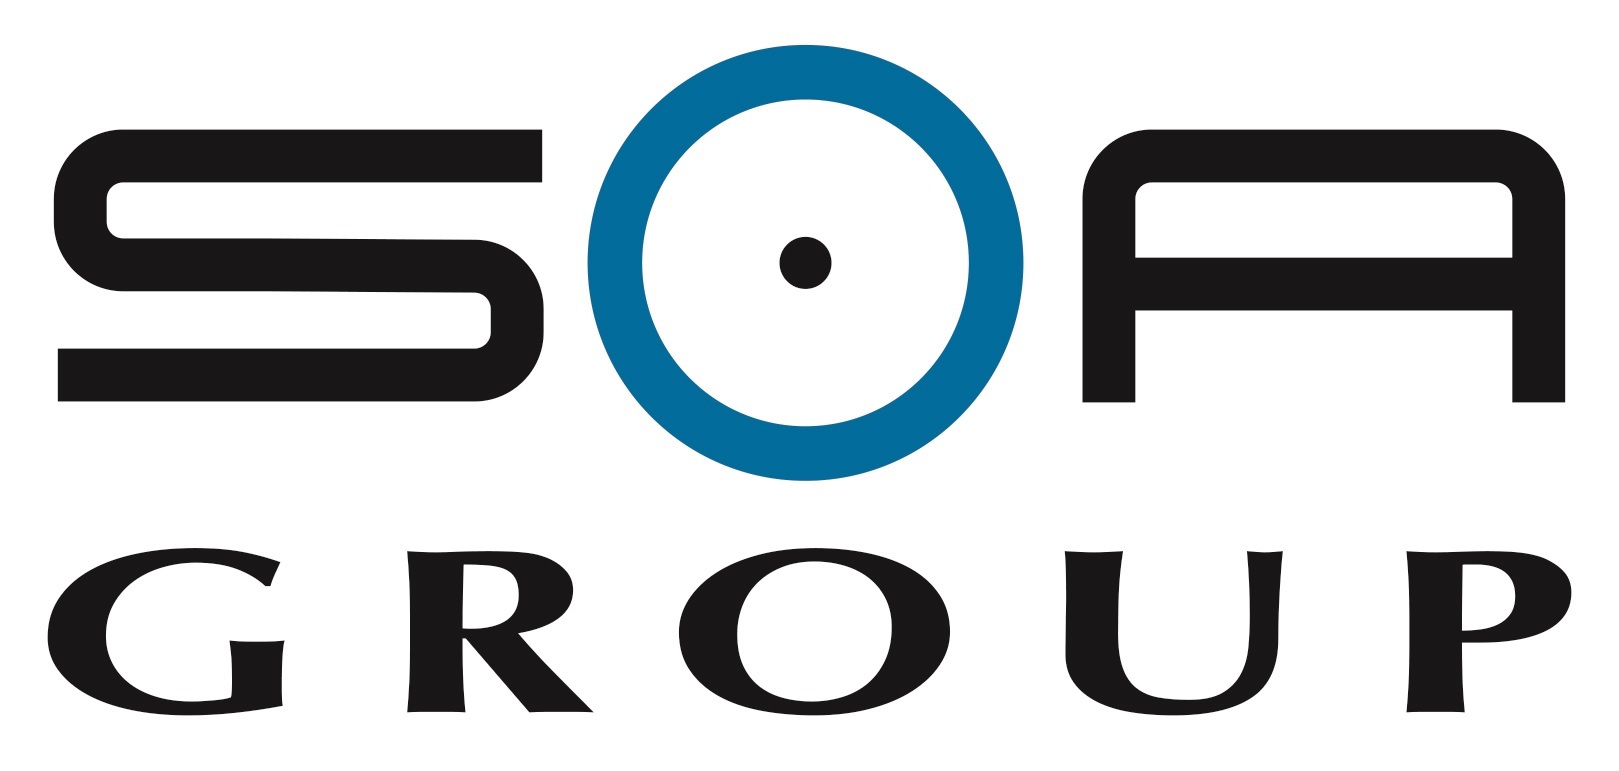 SOA Group